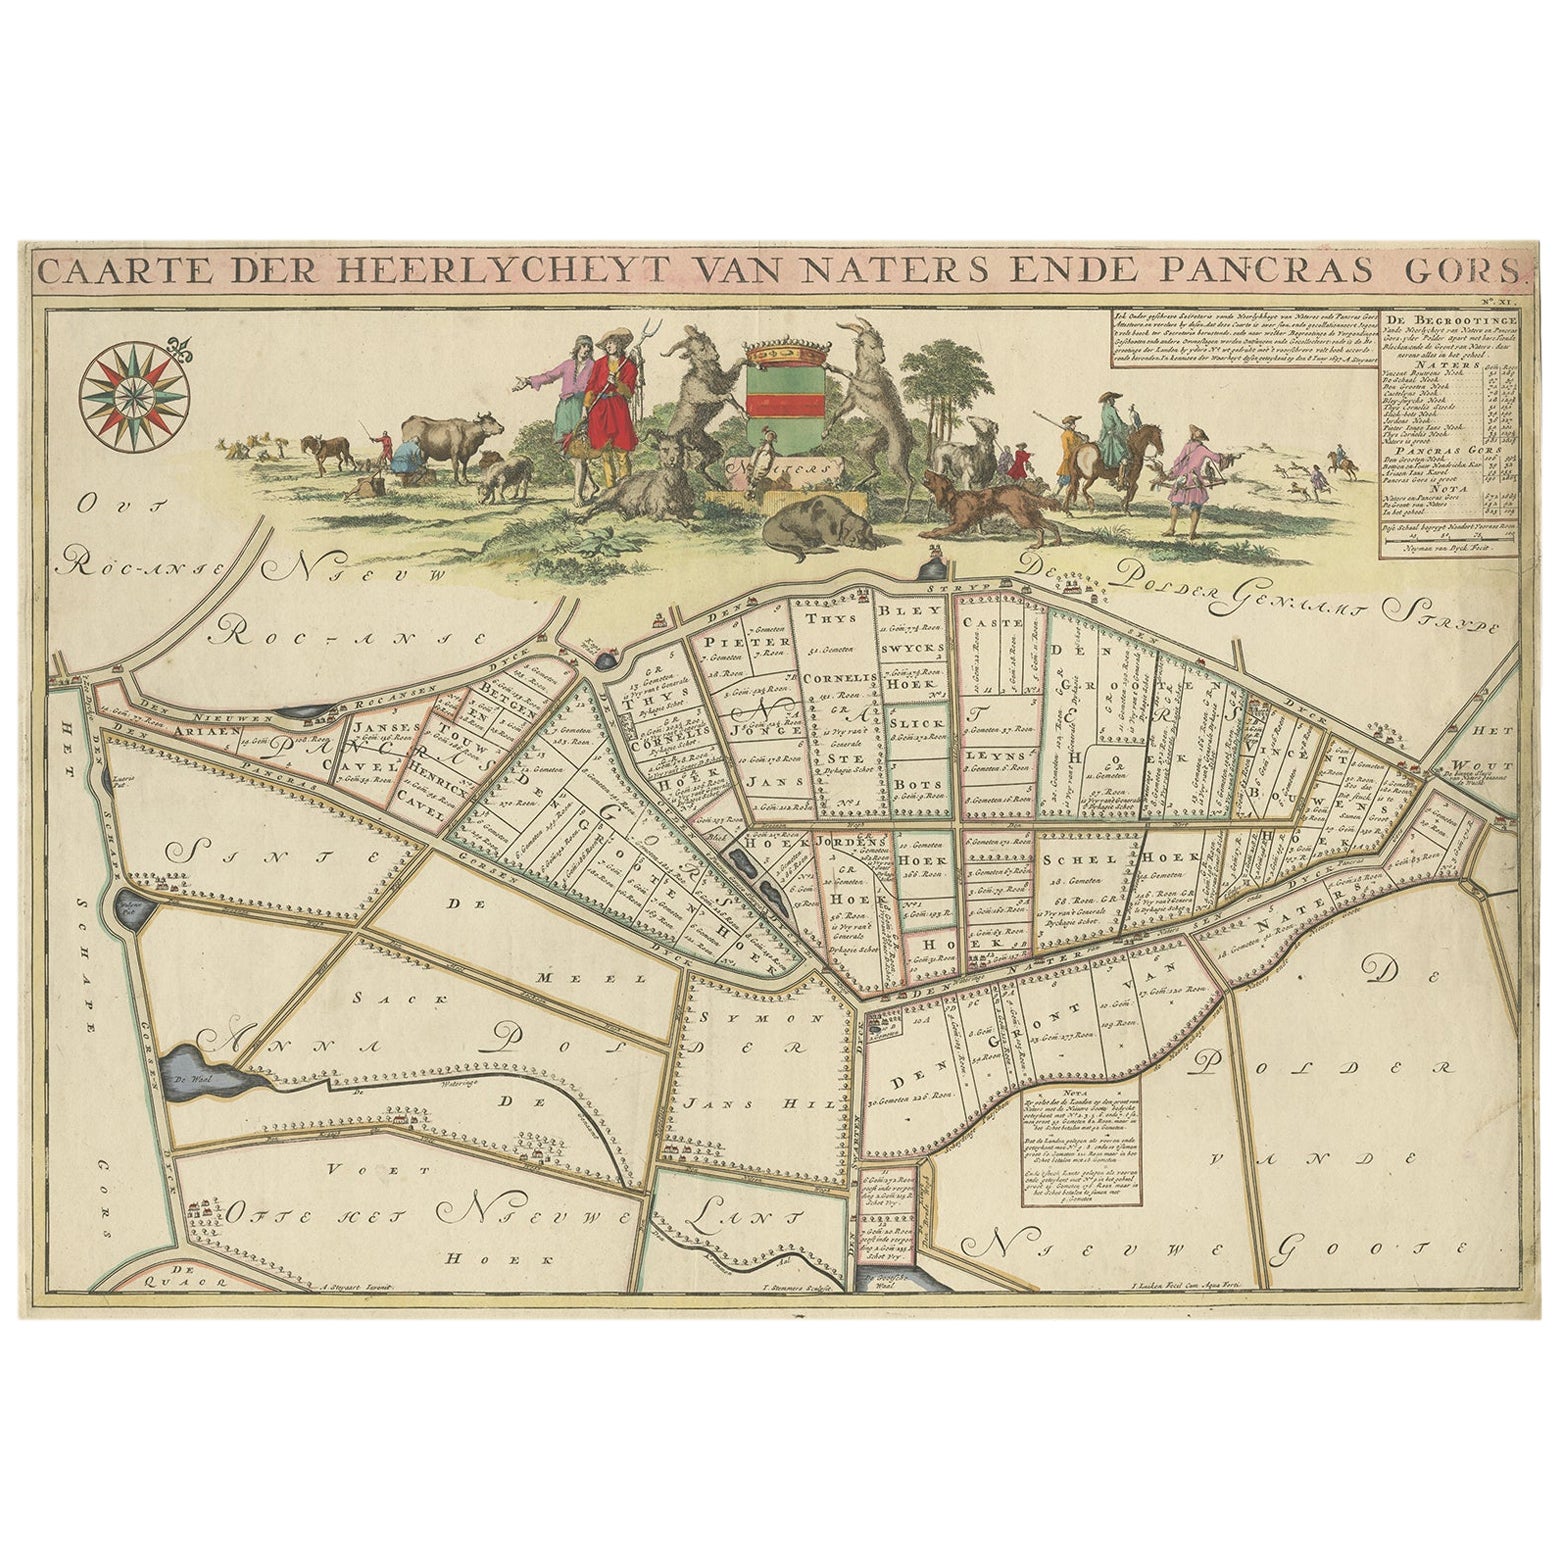 Schöne Karte der Region Naters und Pancrasgors, Niederlande, ca. 1697